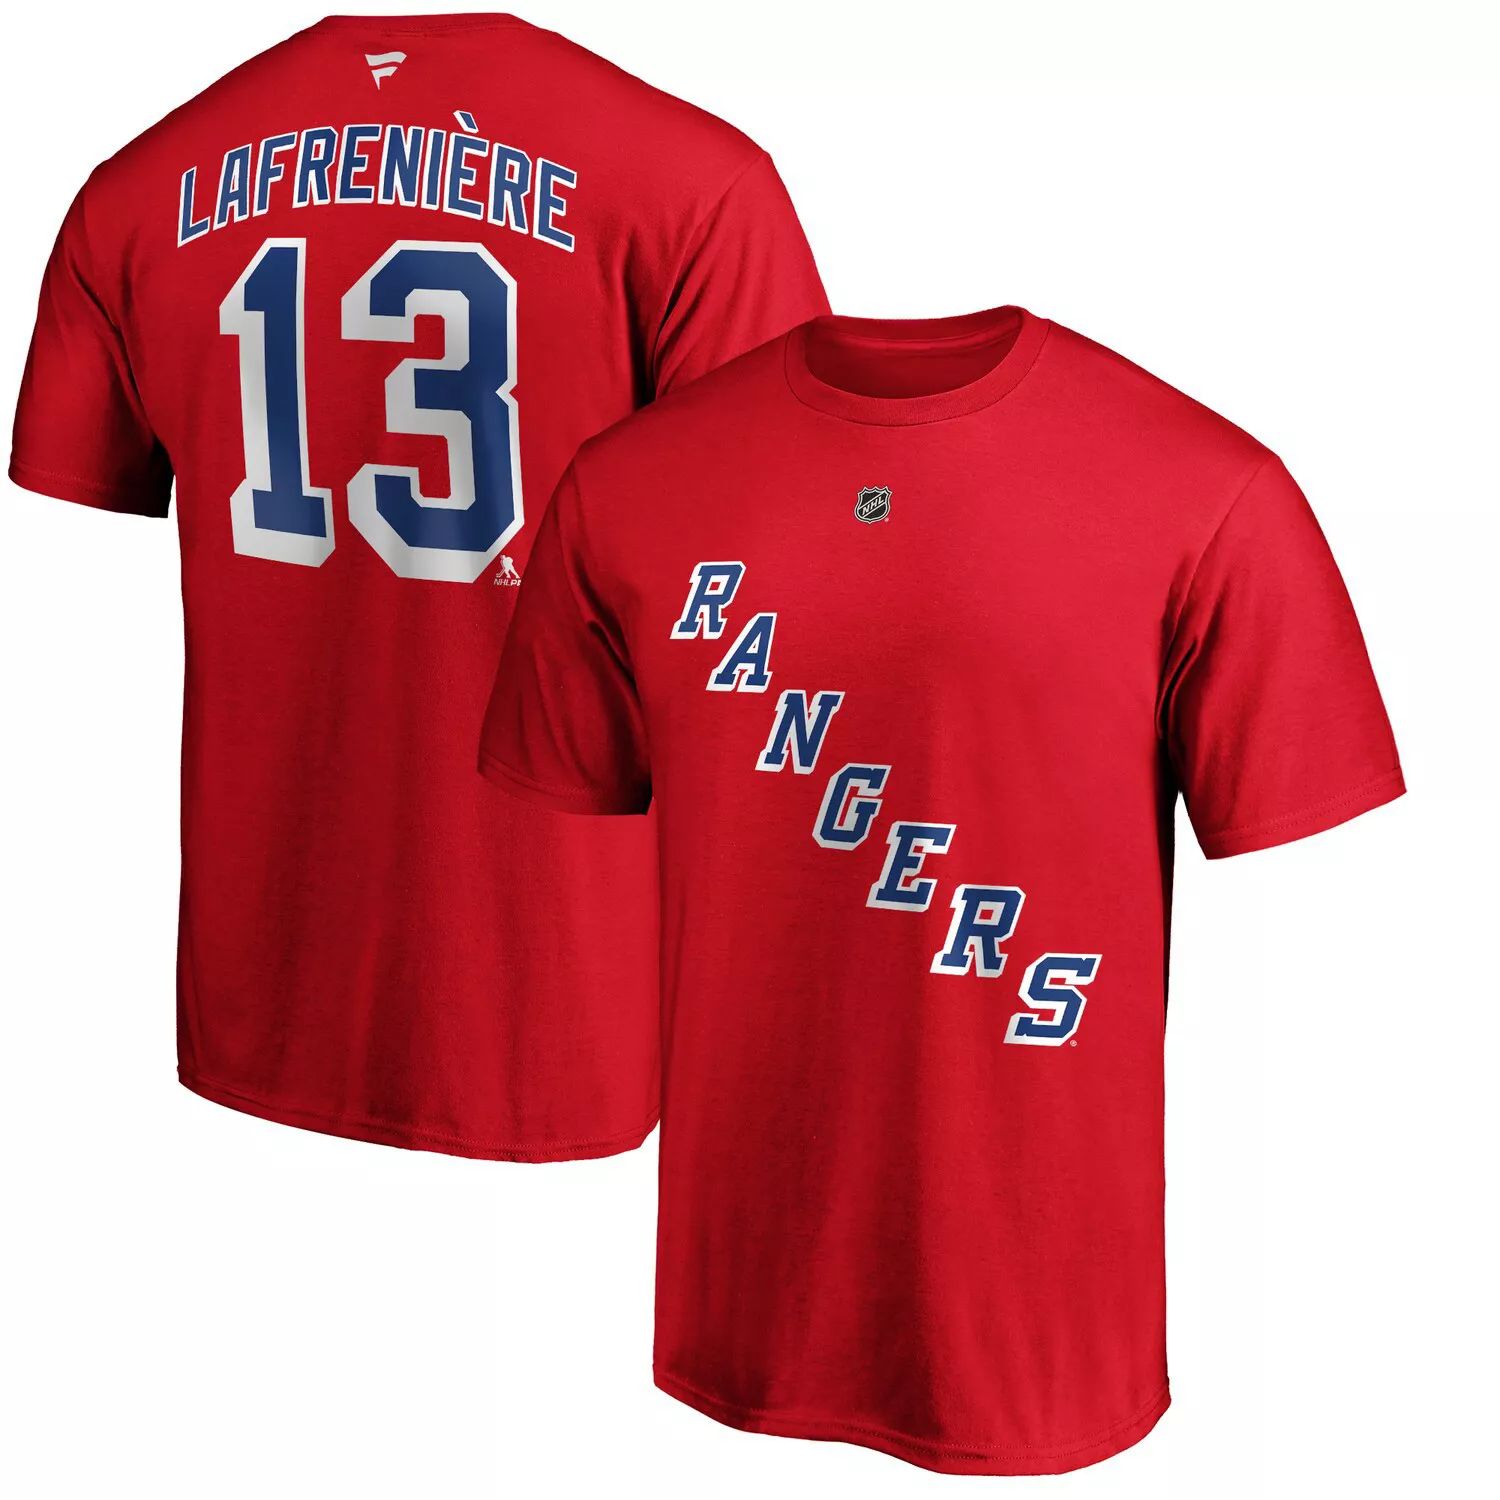 Мужская красная мужская футболка с именем и номером Alexis Lafrenière New York Rangers Fanatics